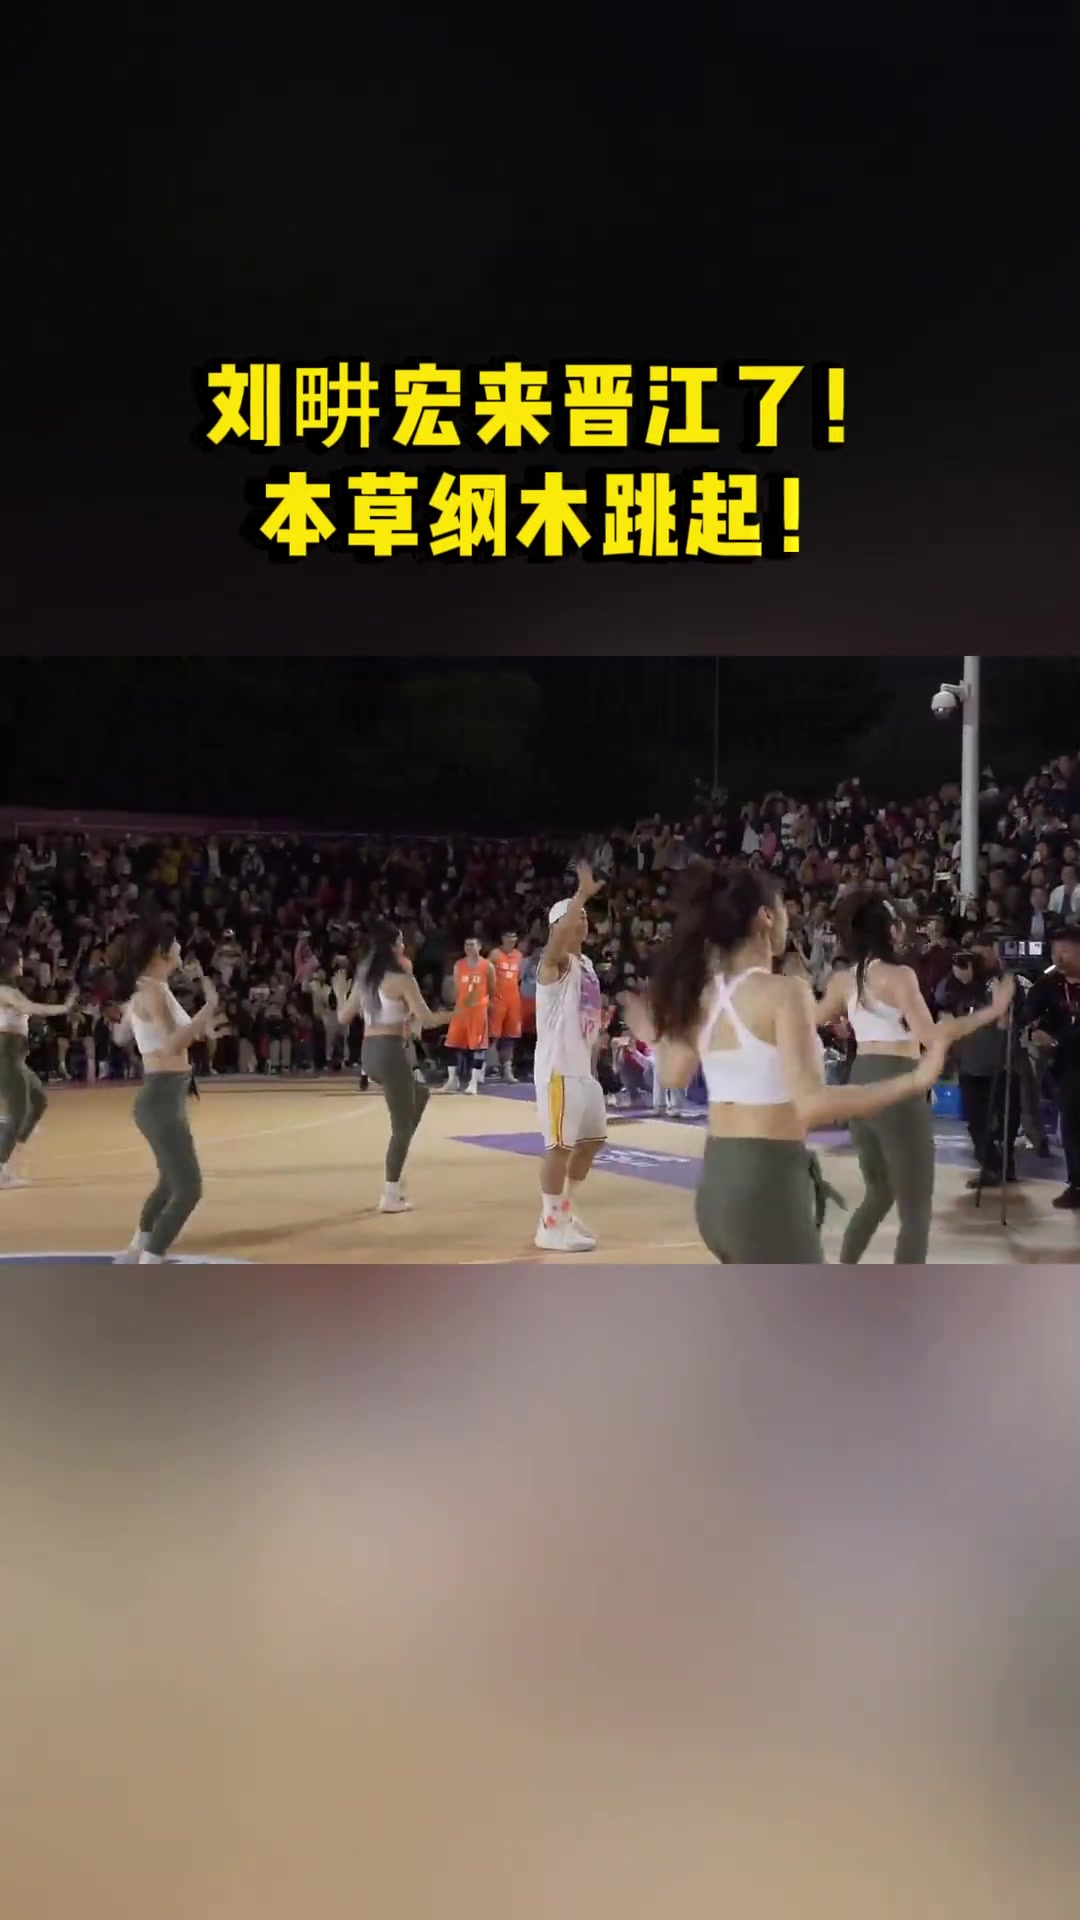 刘畊宏现身晋江野球场 带性感啦啦队跳《本草纲木 》